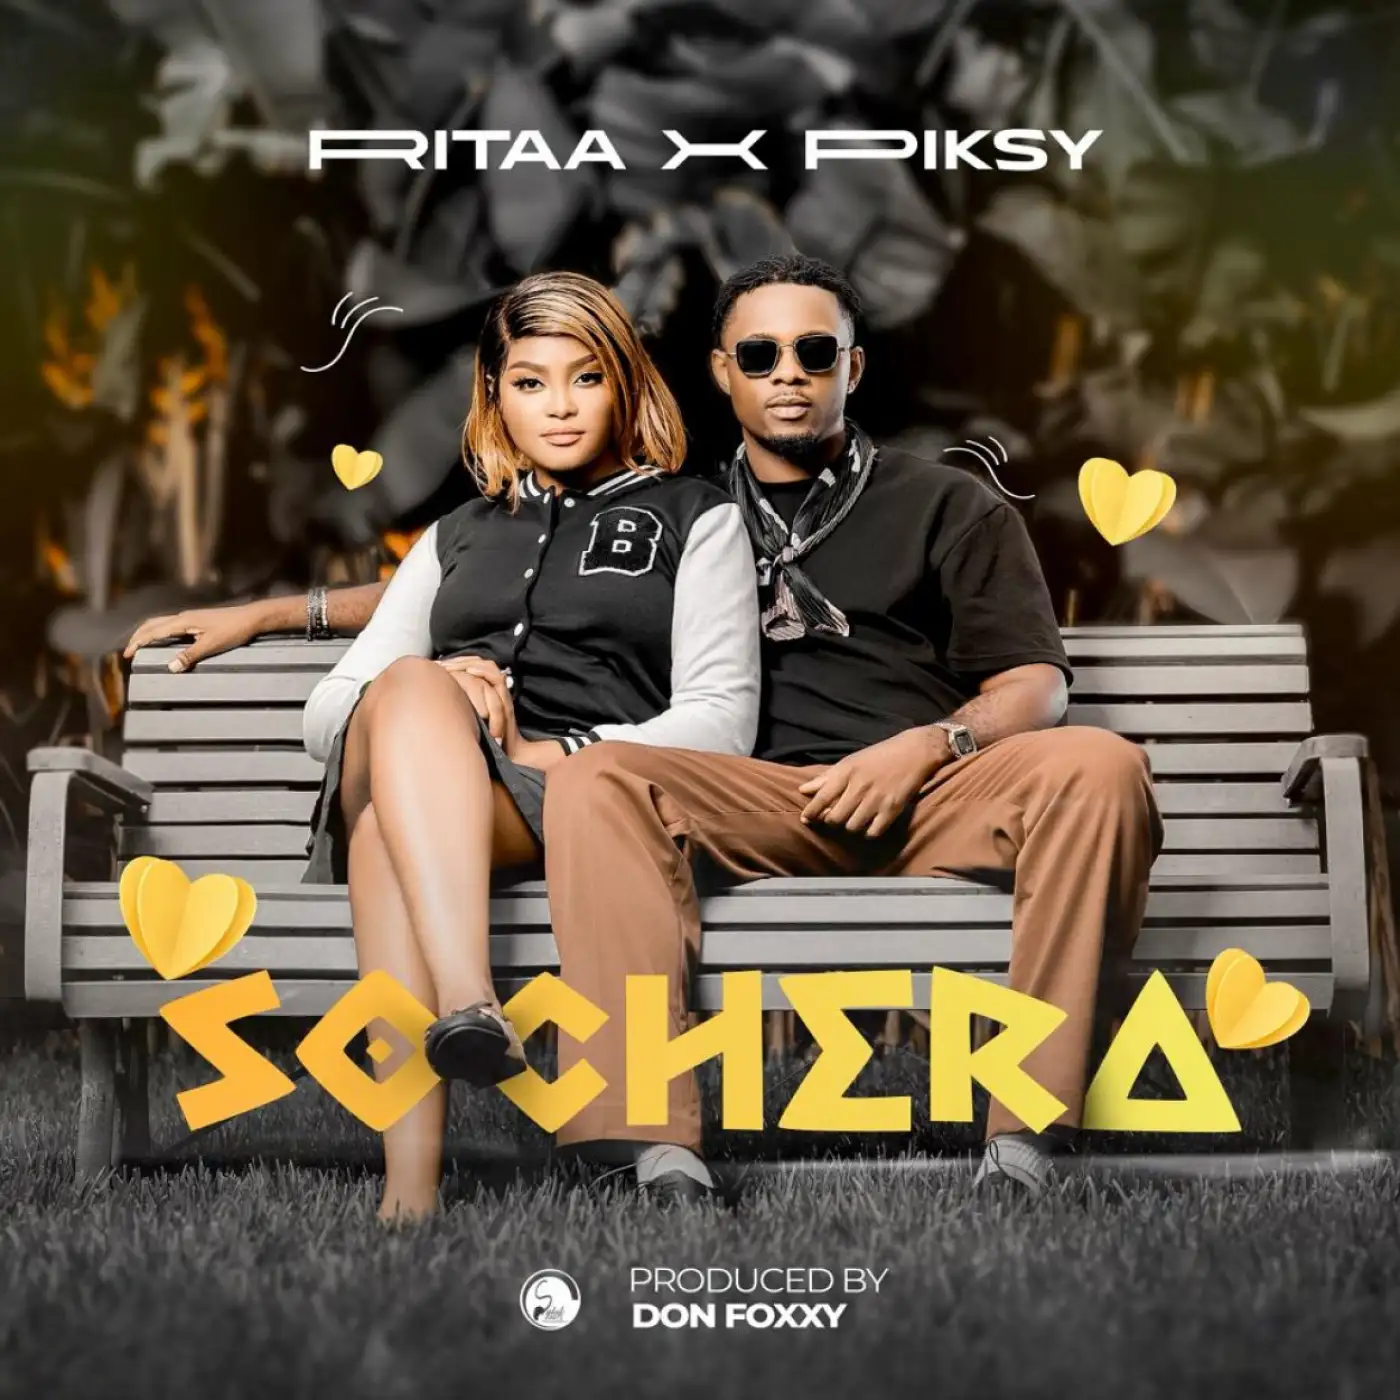 Ritaa & Piksy-Ritaa & Piksy - Sochera (Prod. Don Foxxy)-song artwork cover